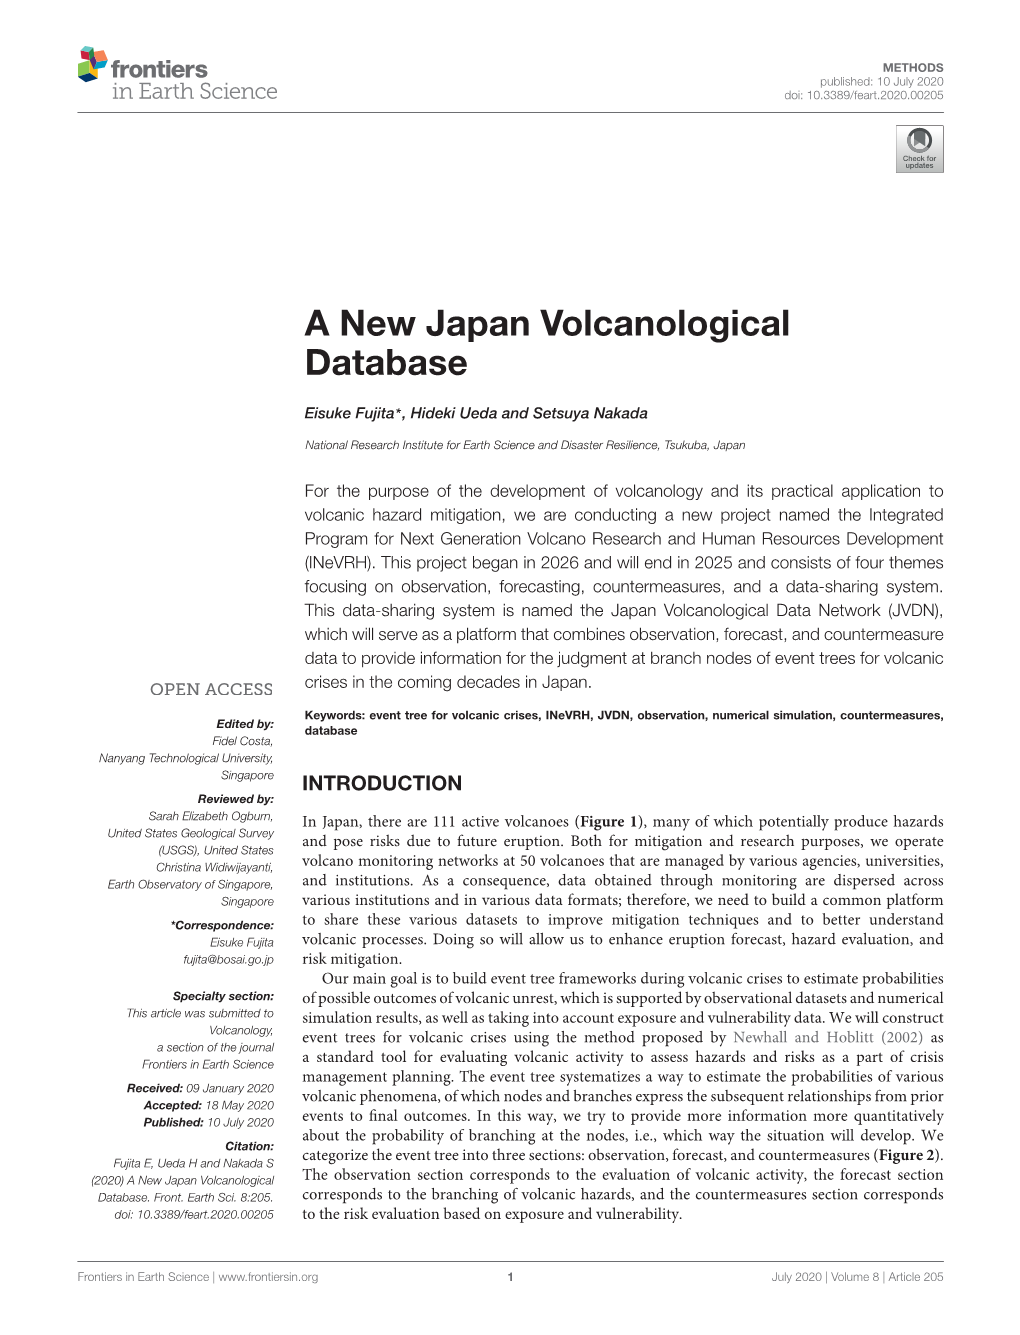 A New Japan Volcanological Database